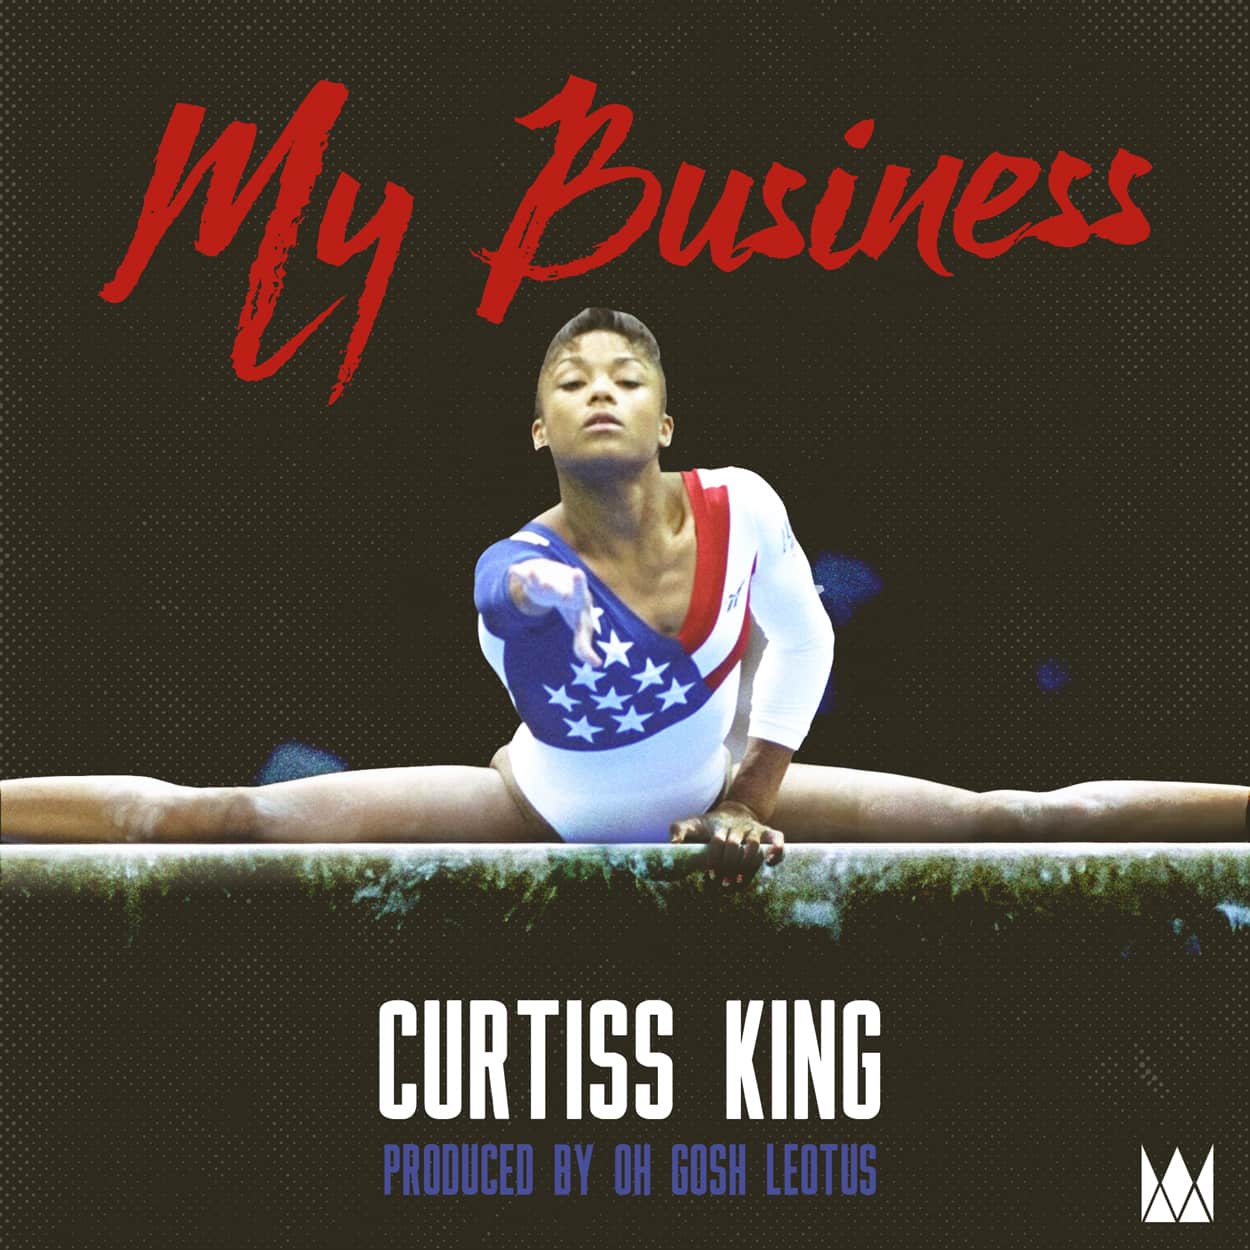 curtiss king - my business - album art design